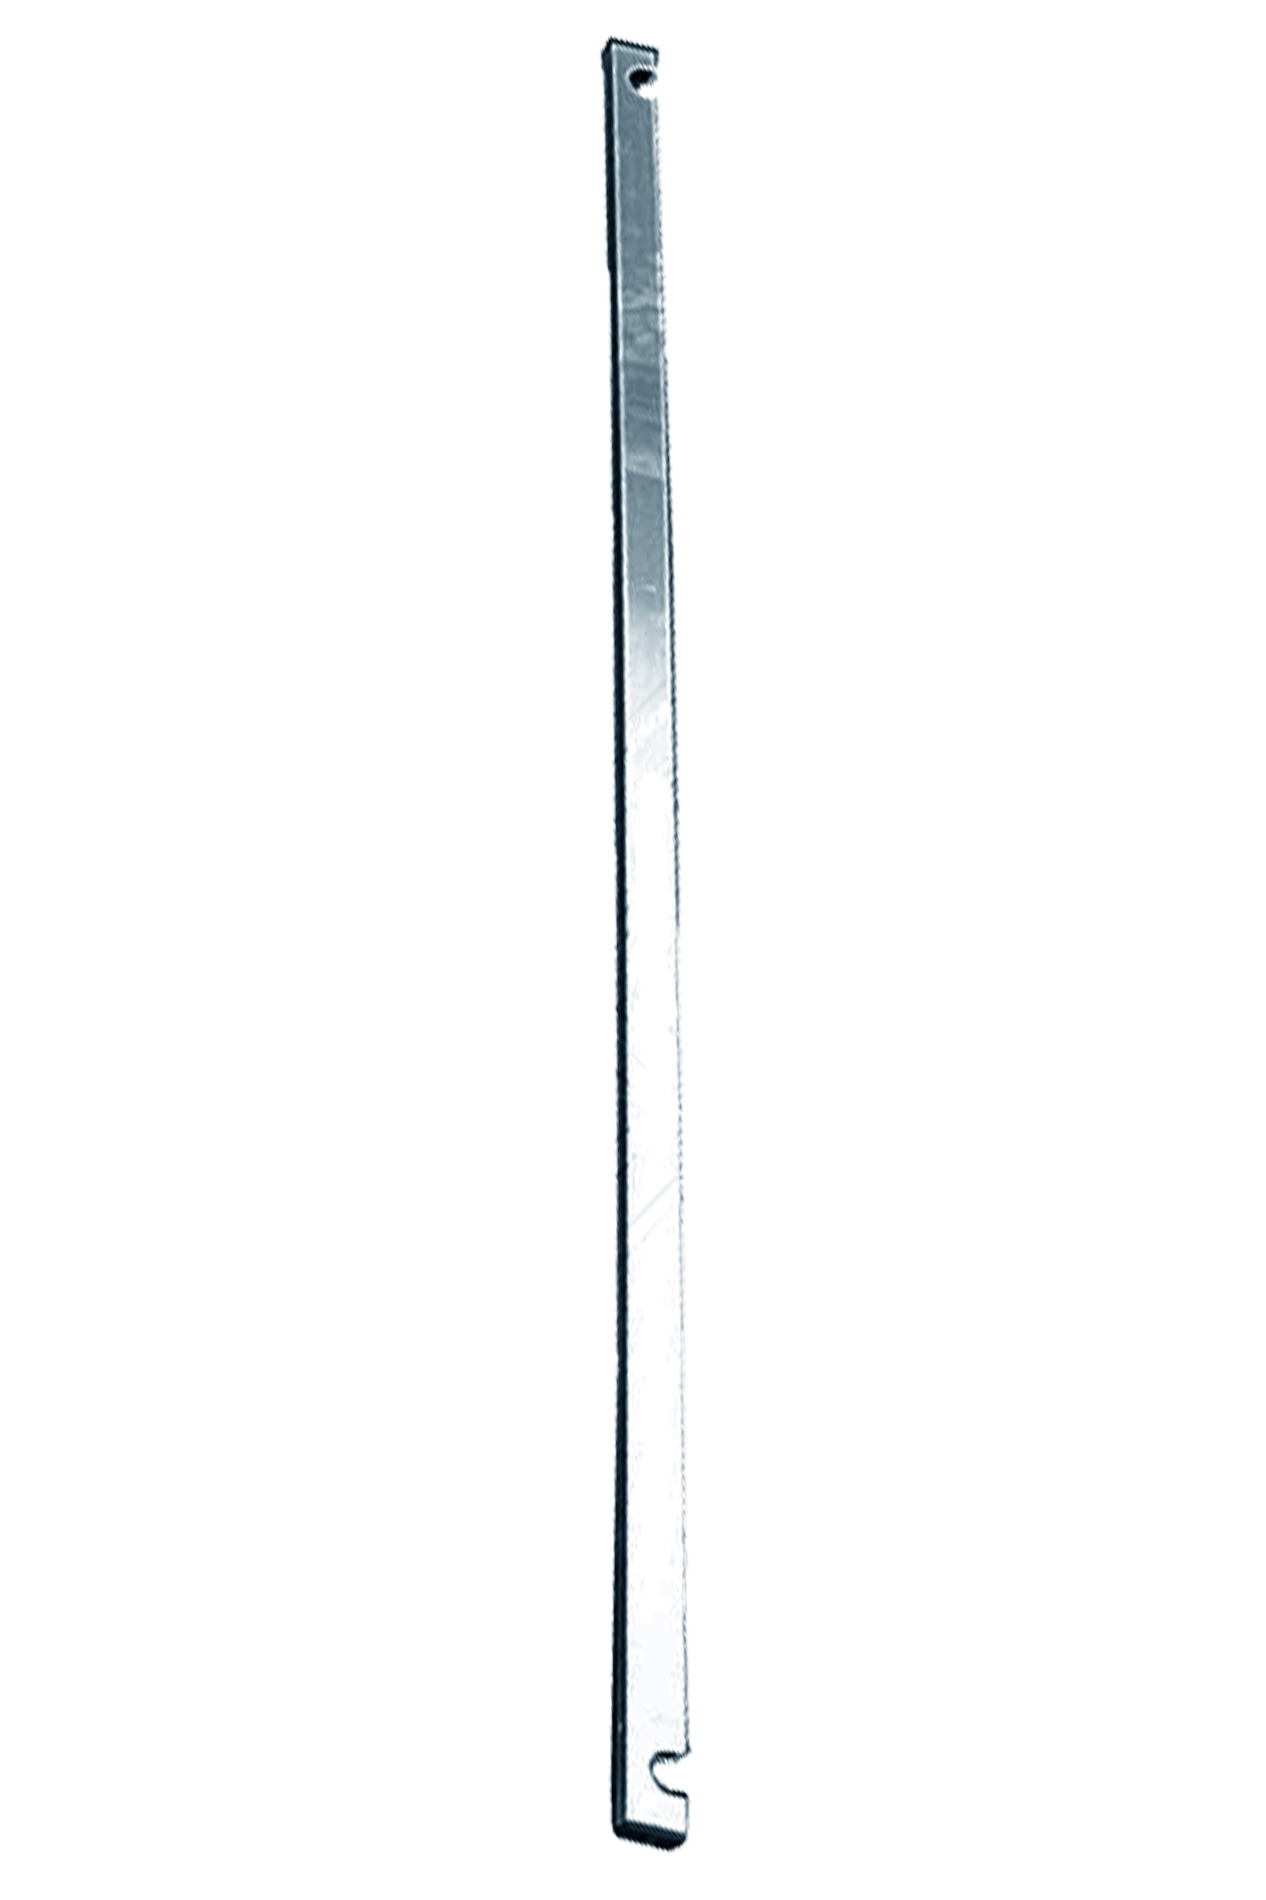 Дополнительное изображение Stabilo серии 1000 рабочая высота 6,2 м, размер площадки (3x0.75 м)